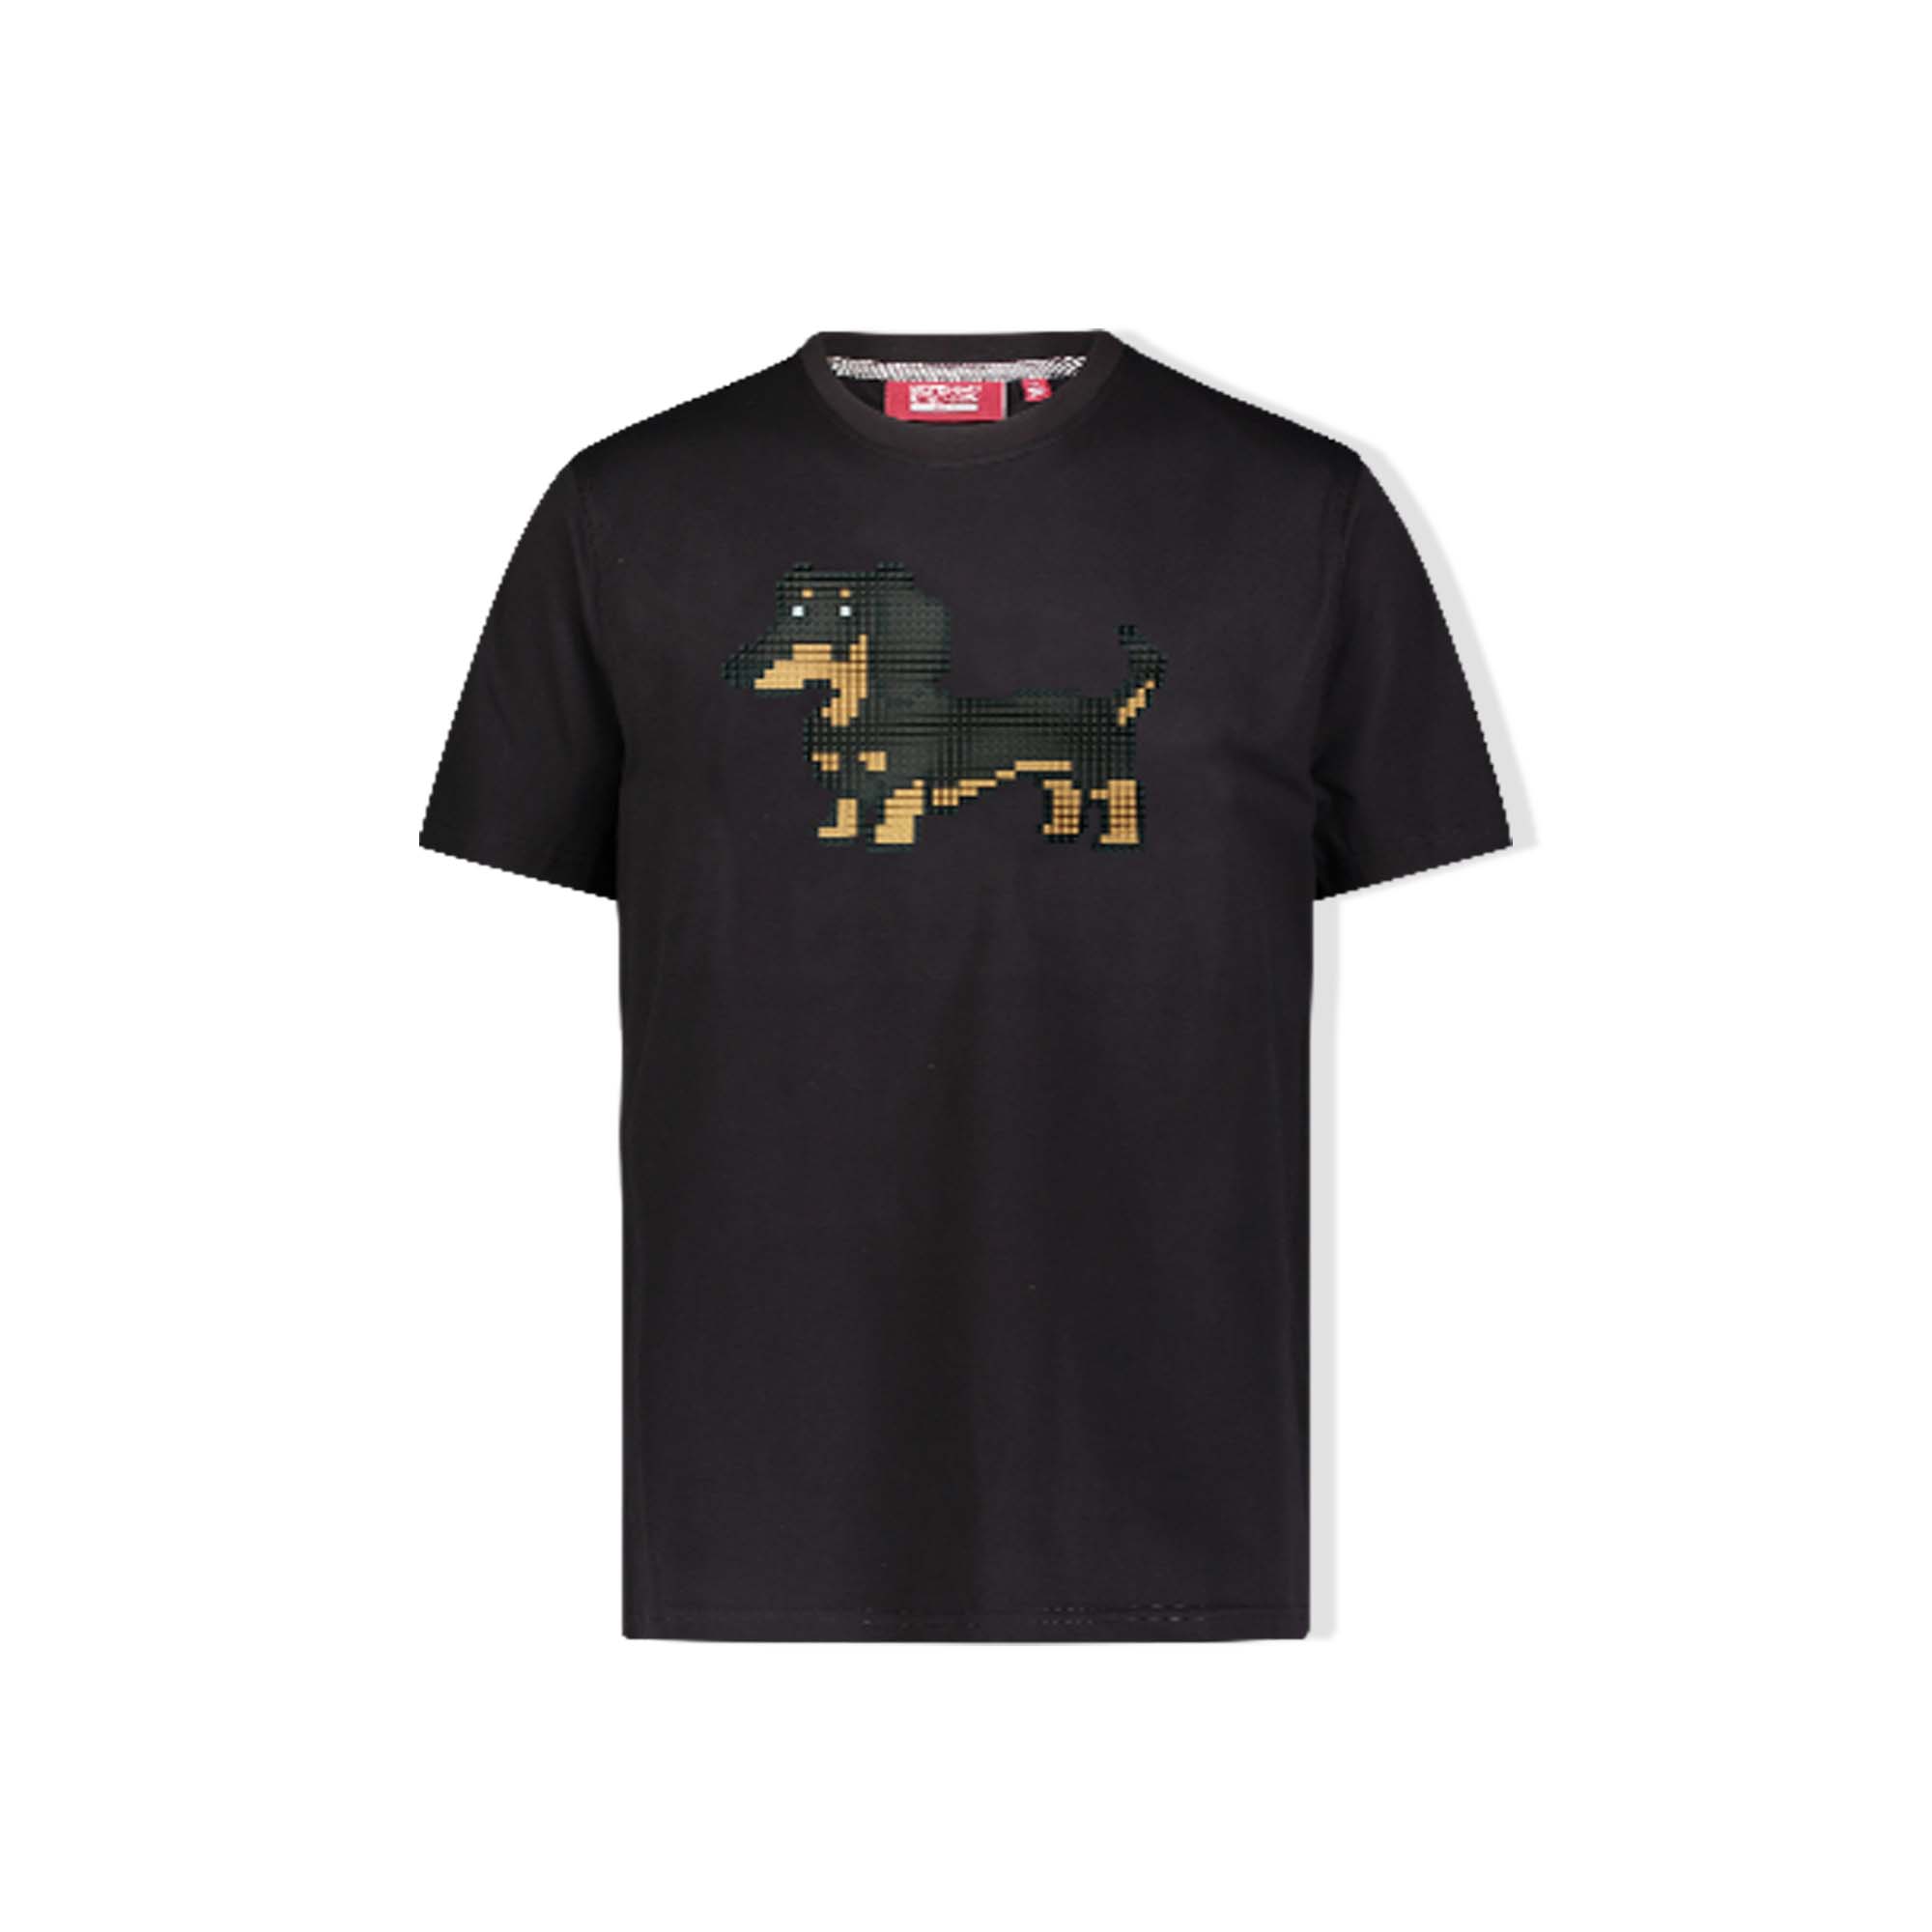 Buy 8-Bit Weiner Dog T-Shirt - Black Online